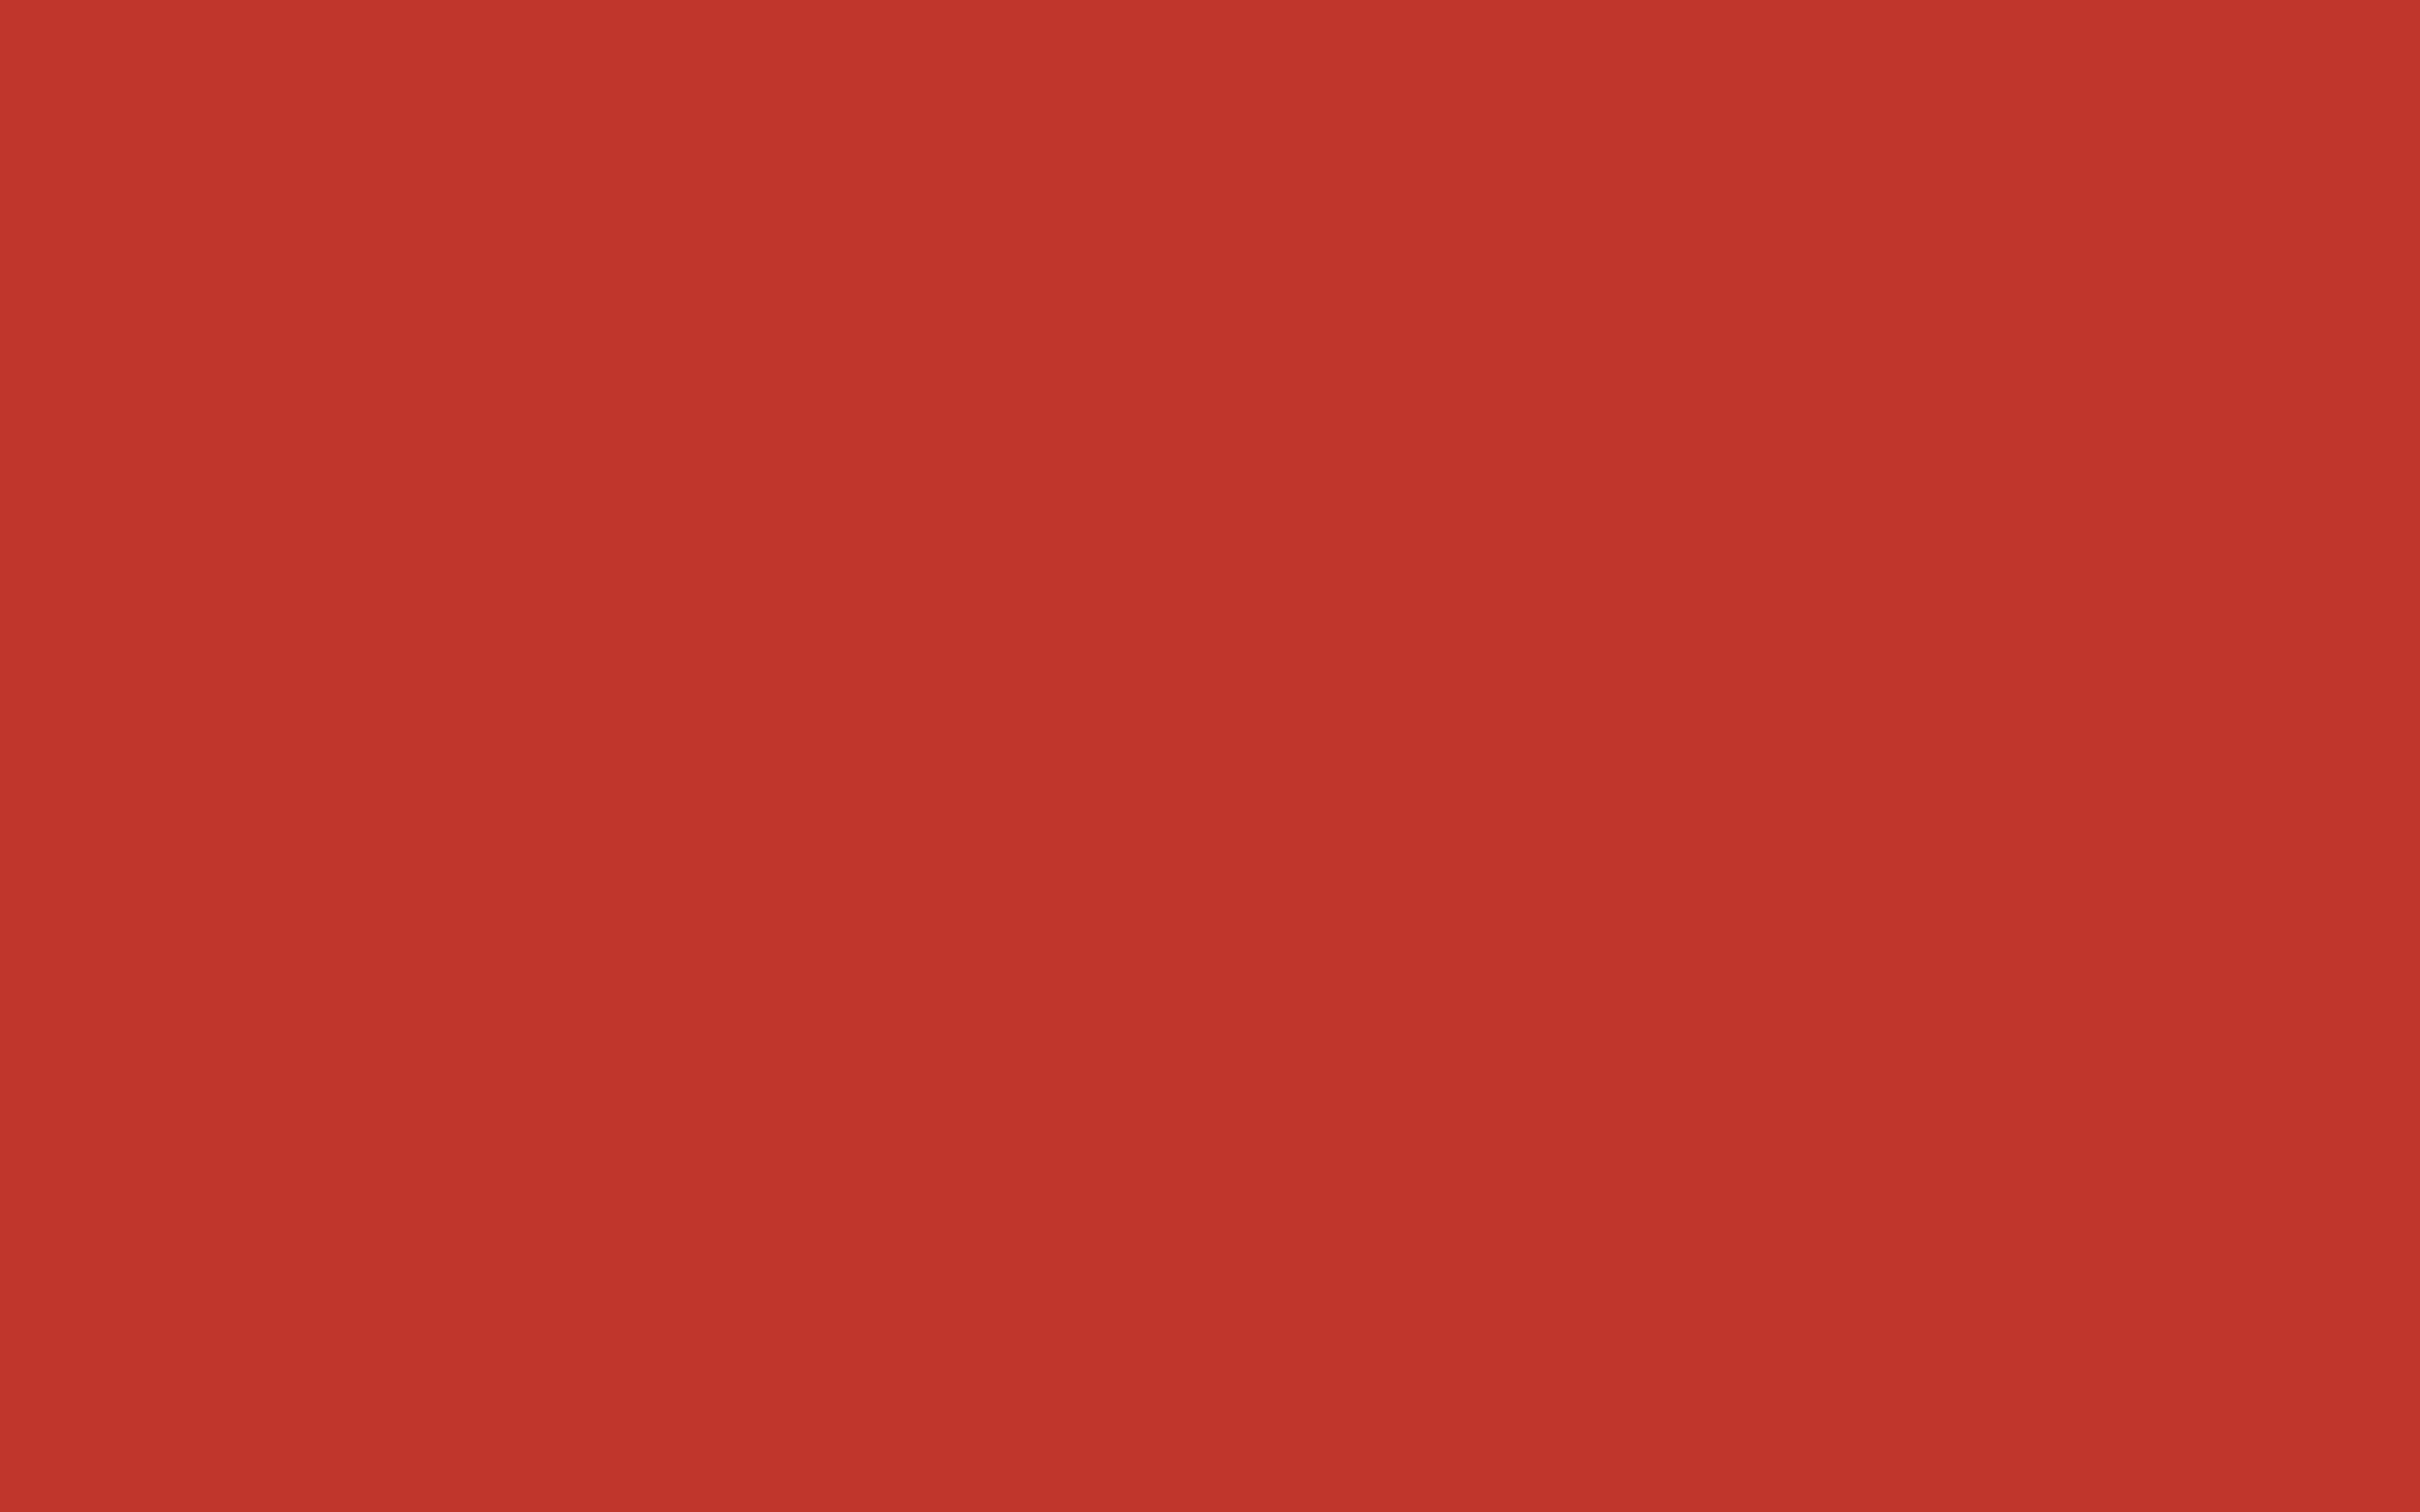 2560x1600 International Orange Golden Gate Bridge Solid Color Background